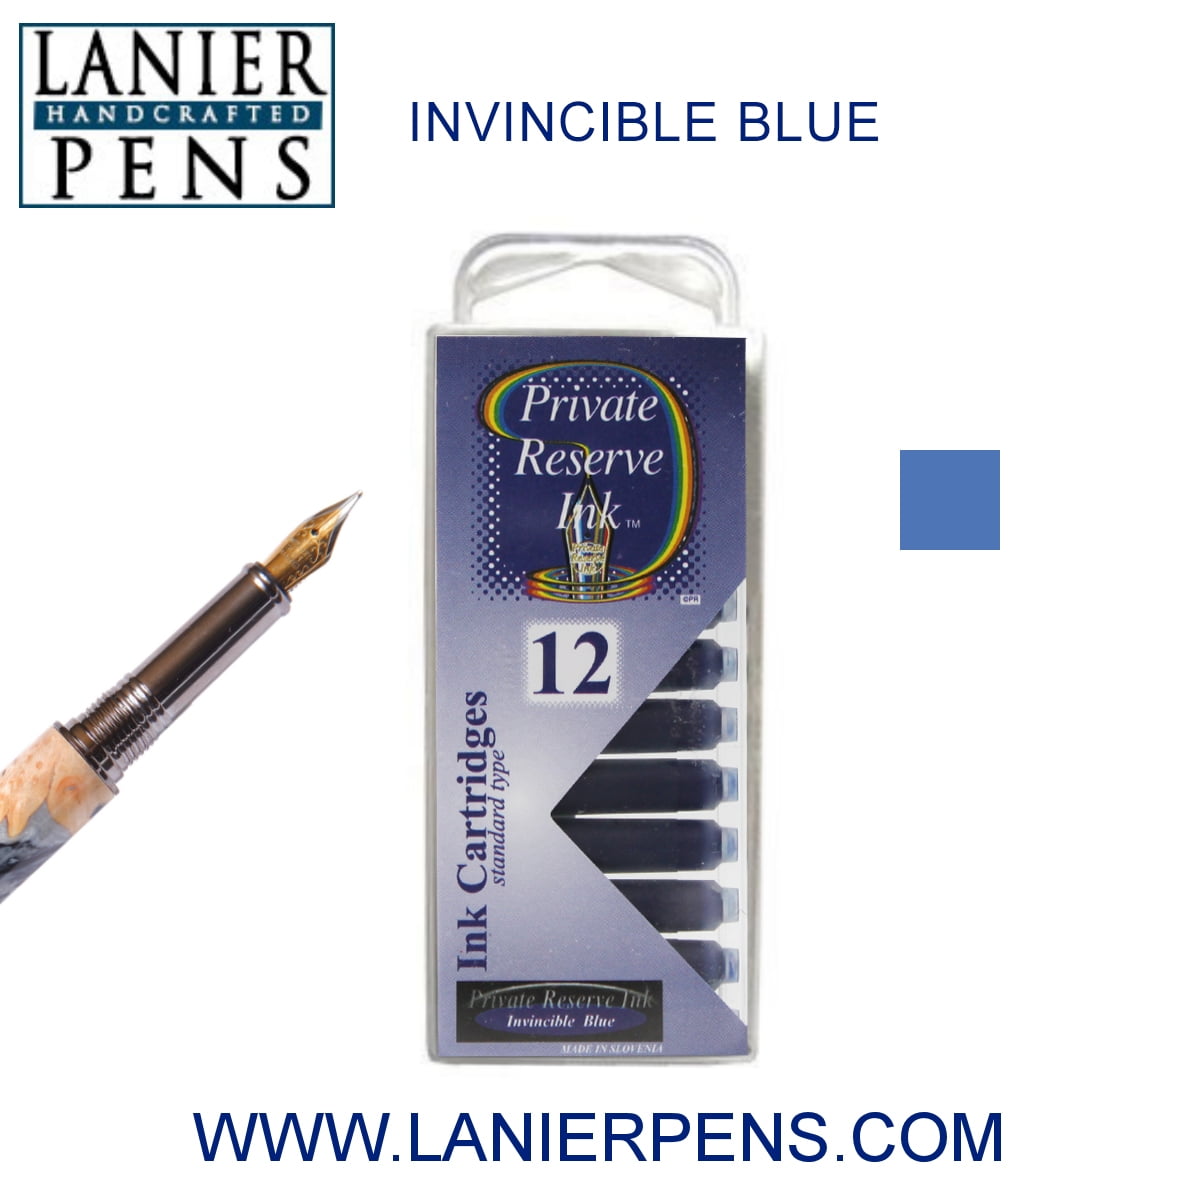 10 Pcs blue ink parker style standard 1.0mm ballpoint pen refills nib medium GR 